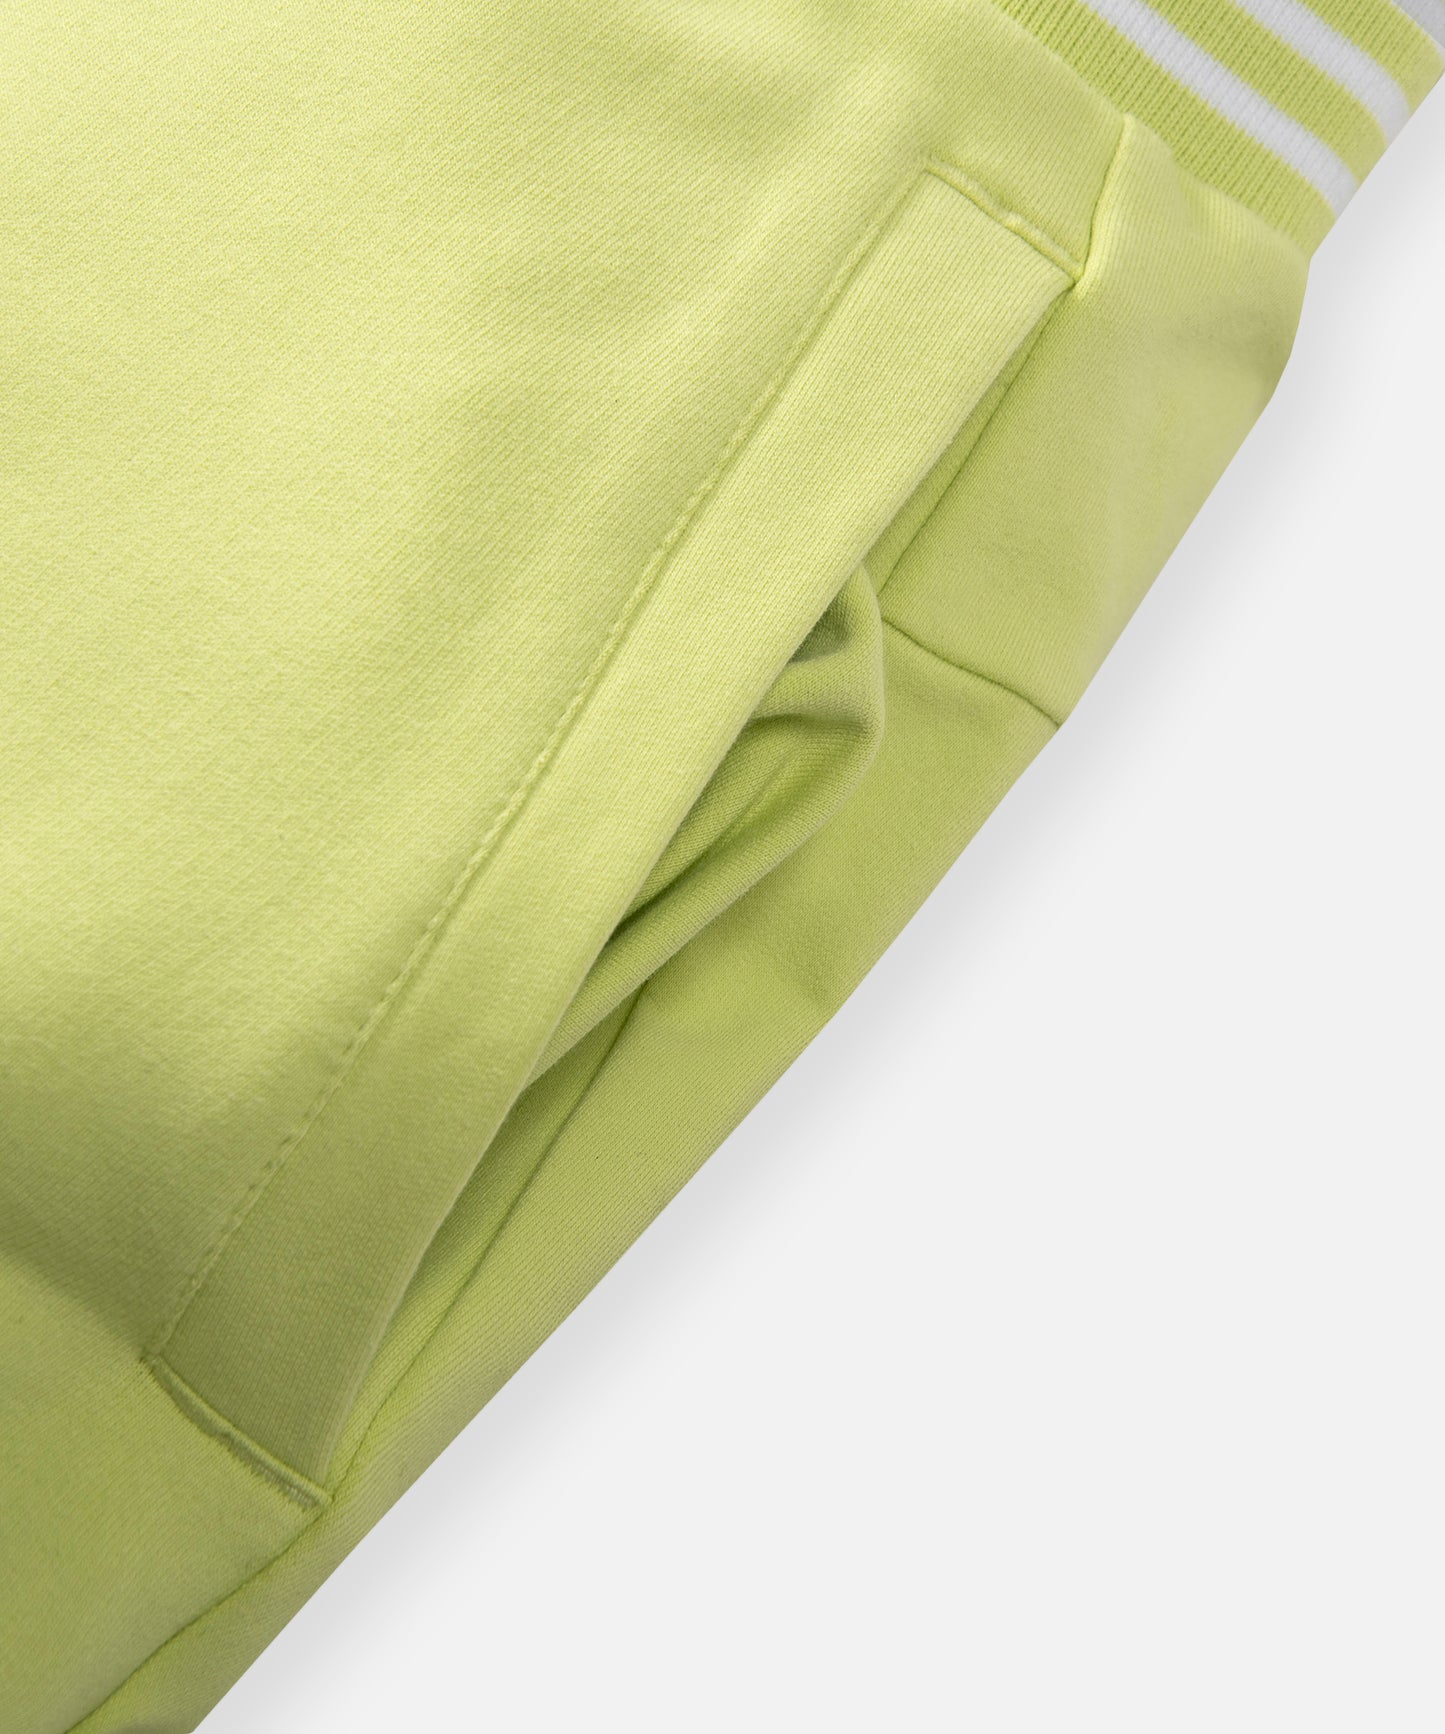 CUSTOM_ALT_TEXT: On-seam front welt pocket on Paper Planes Gusset Short color Lime Sherbet.